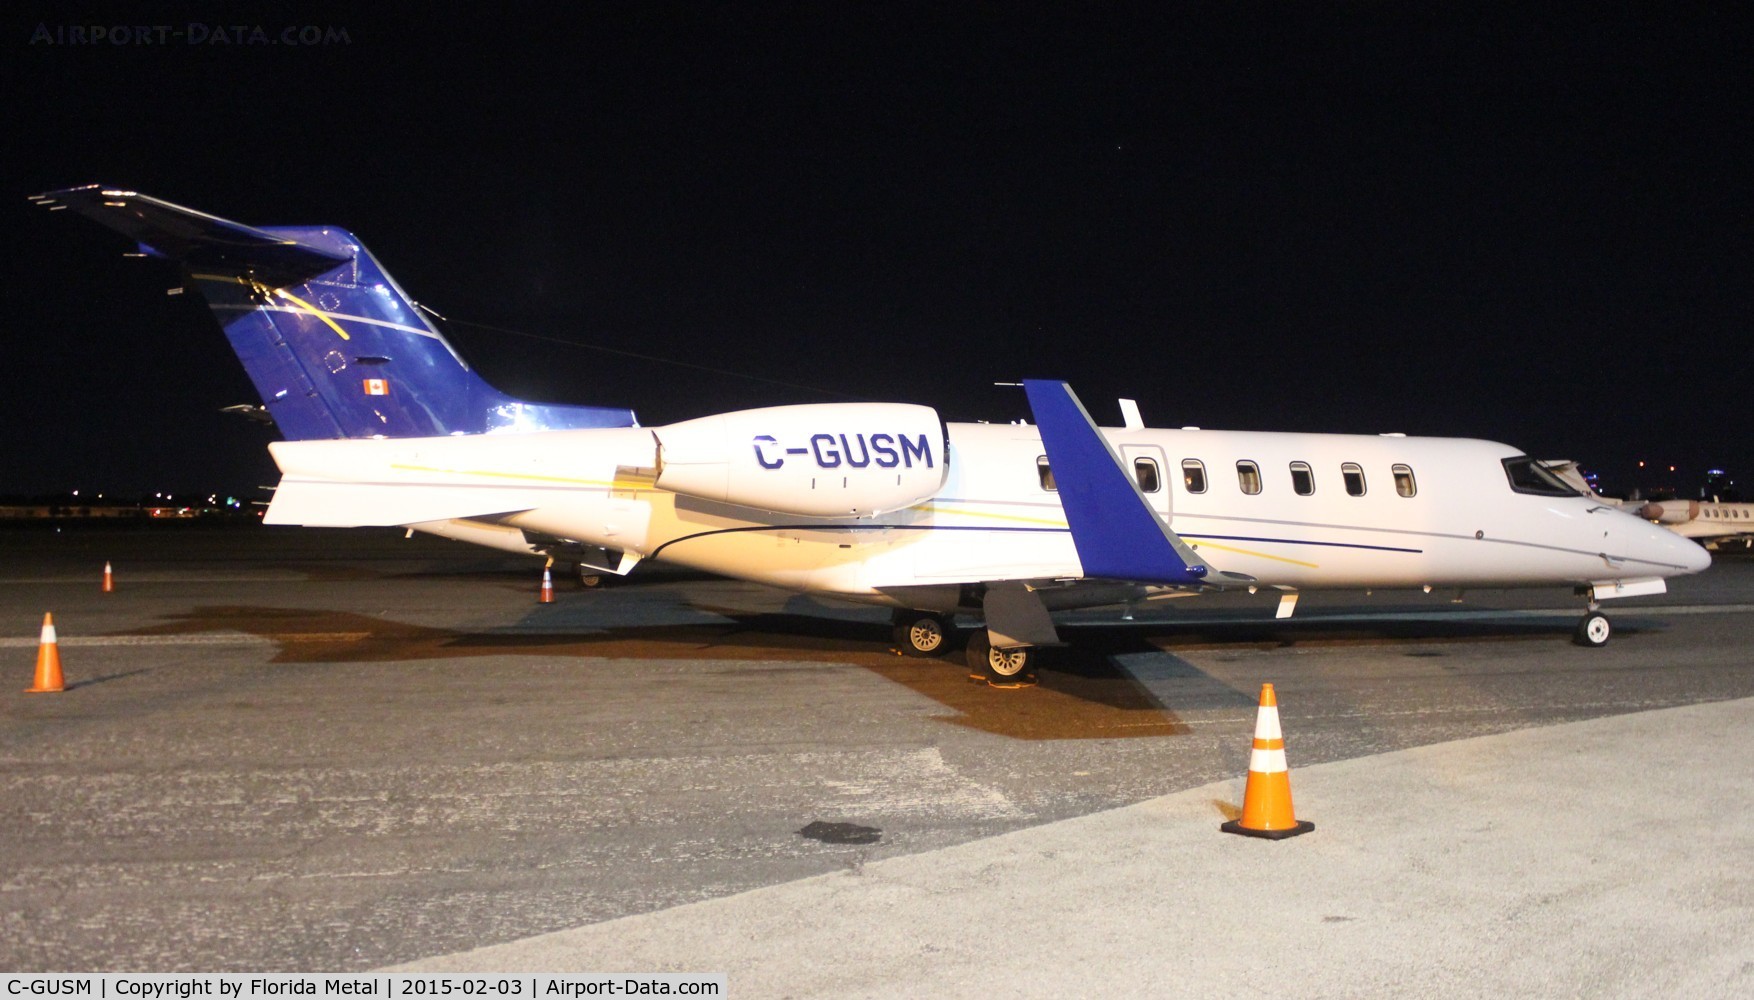 C-GUSM, 2004 Learjet 45 C/N 45-255, Lear 45